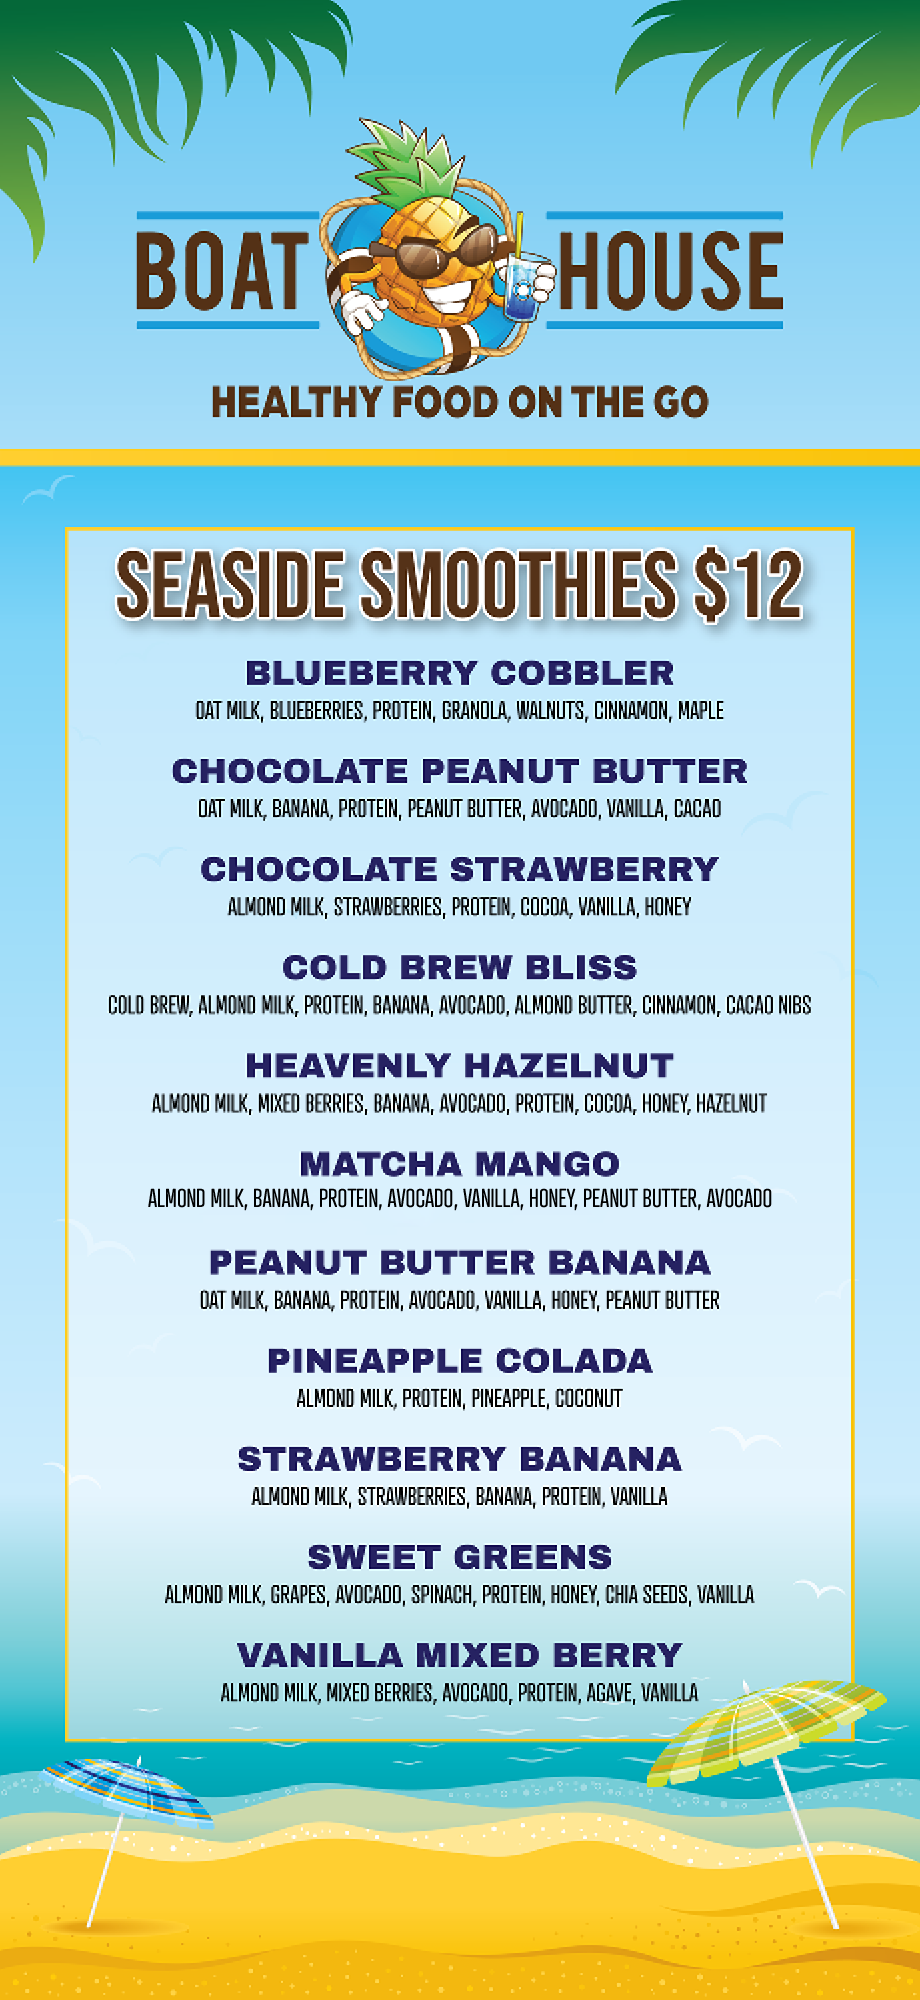 A menu of seaside smoothies